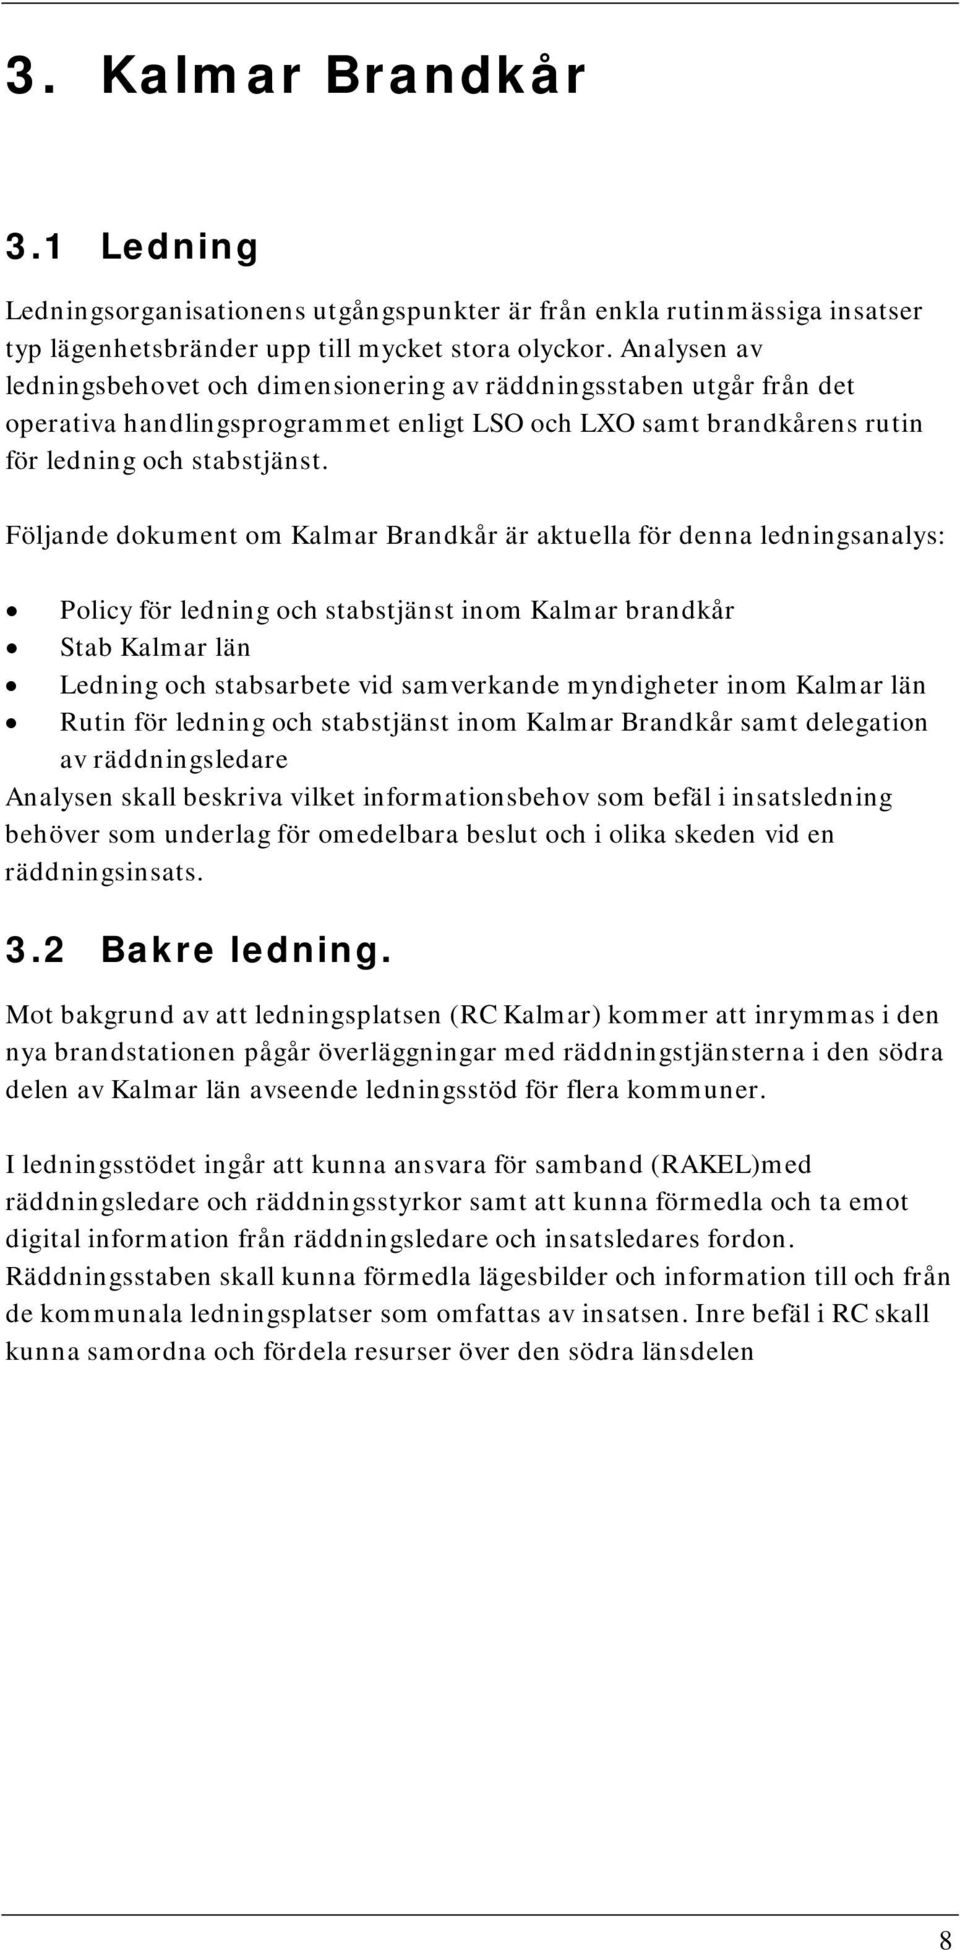 Följande dokument om Kalmar Brandkår är aktuella för denna ledningsanalys: Policy för ledning och stabstjänst inom Kalmar brandkår Stab Kalmar län Ledning och stabsarbete vid samverkande myndigheter